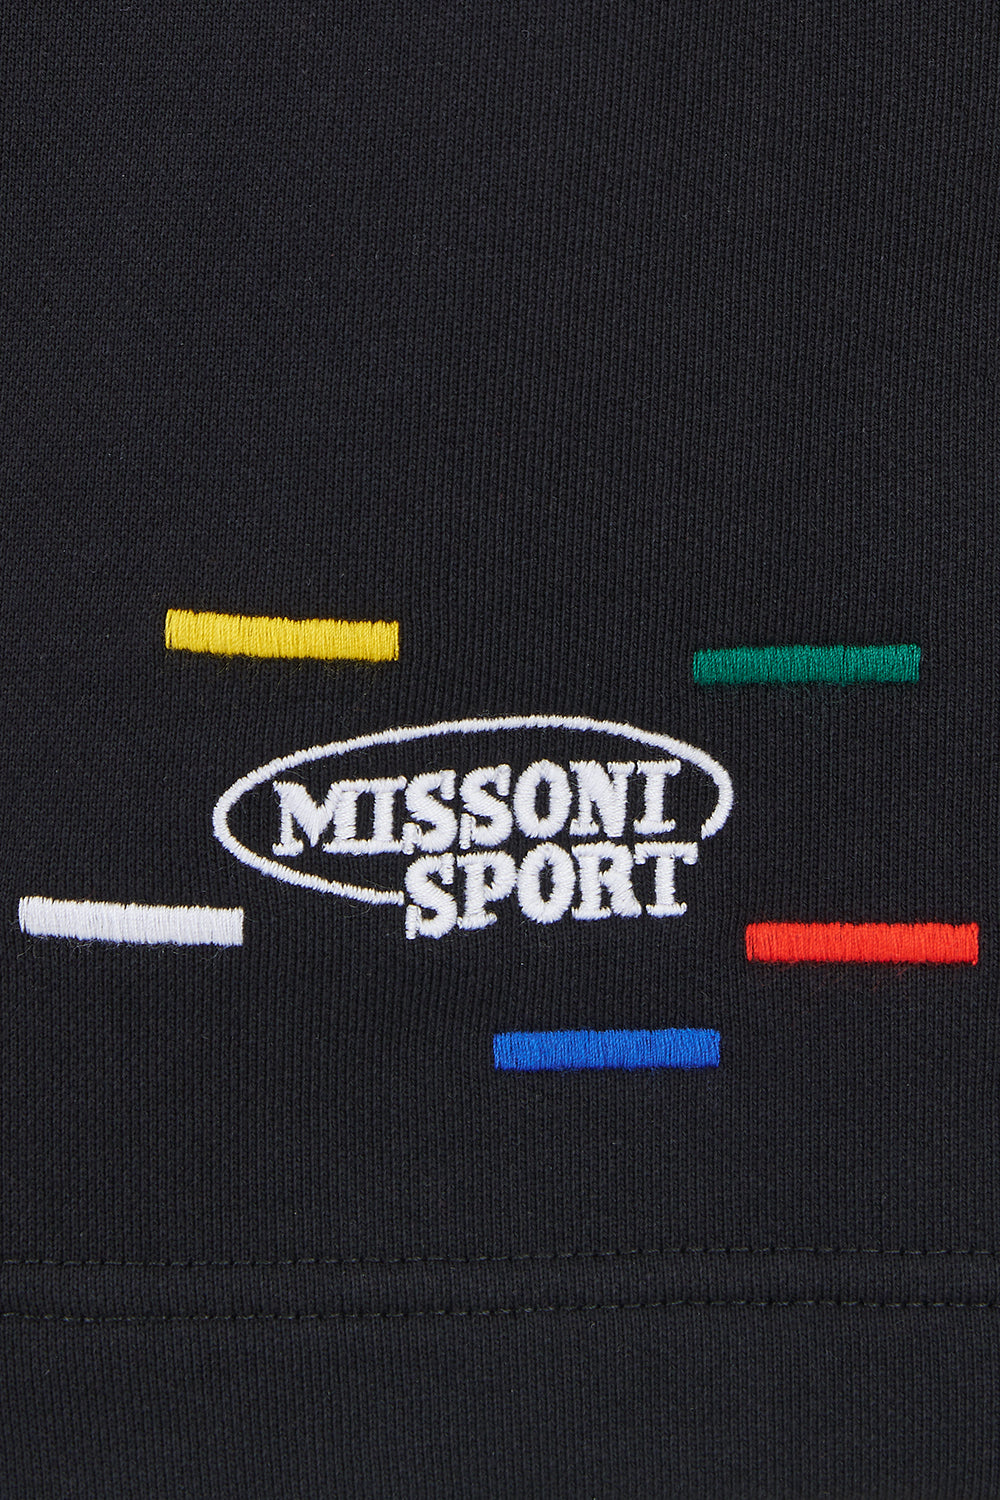 Missoni Men’s Shorts Black - Close Up Logo